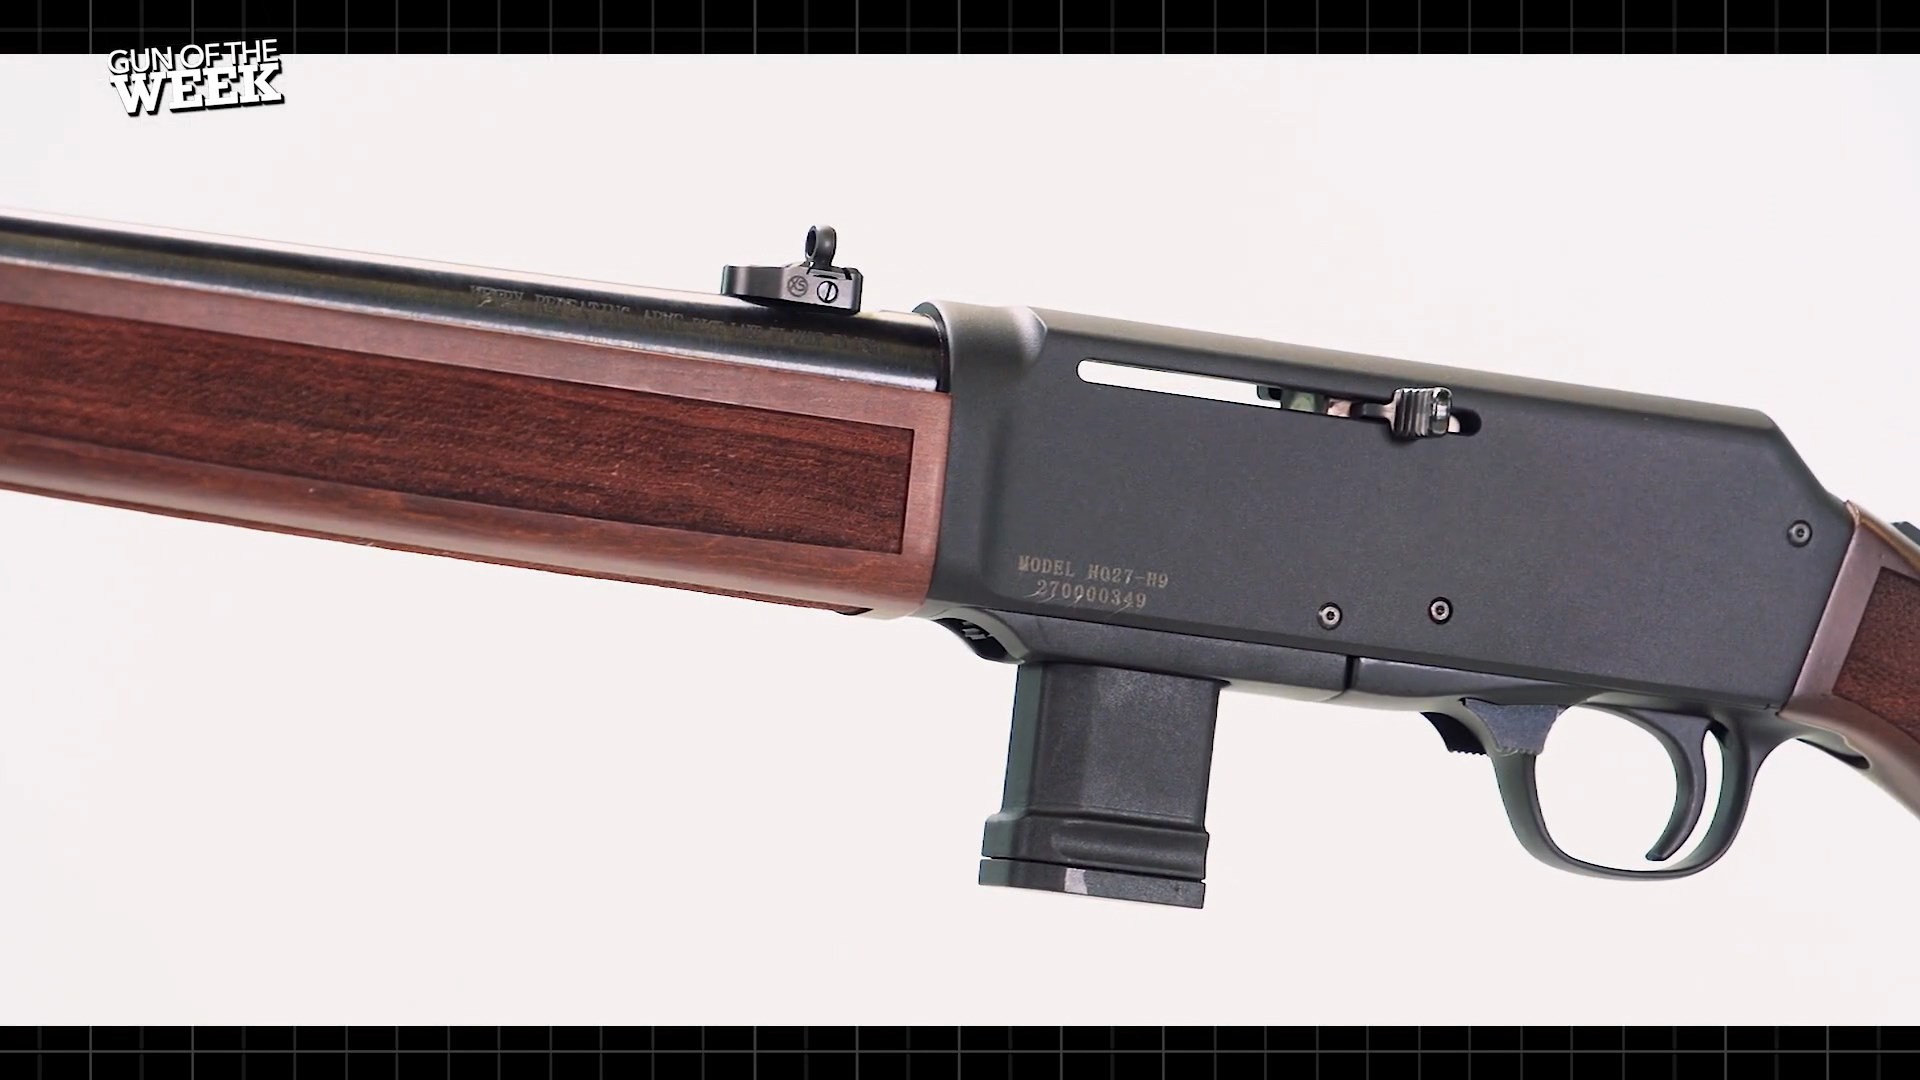 Henry Homesteader pistol caliber carbine left-side view on white